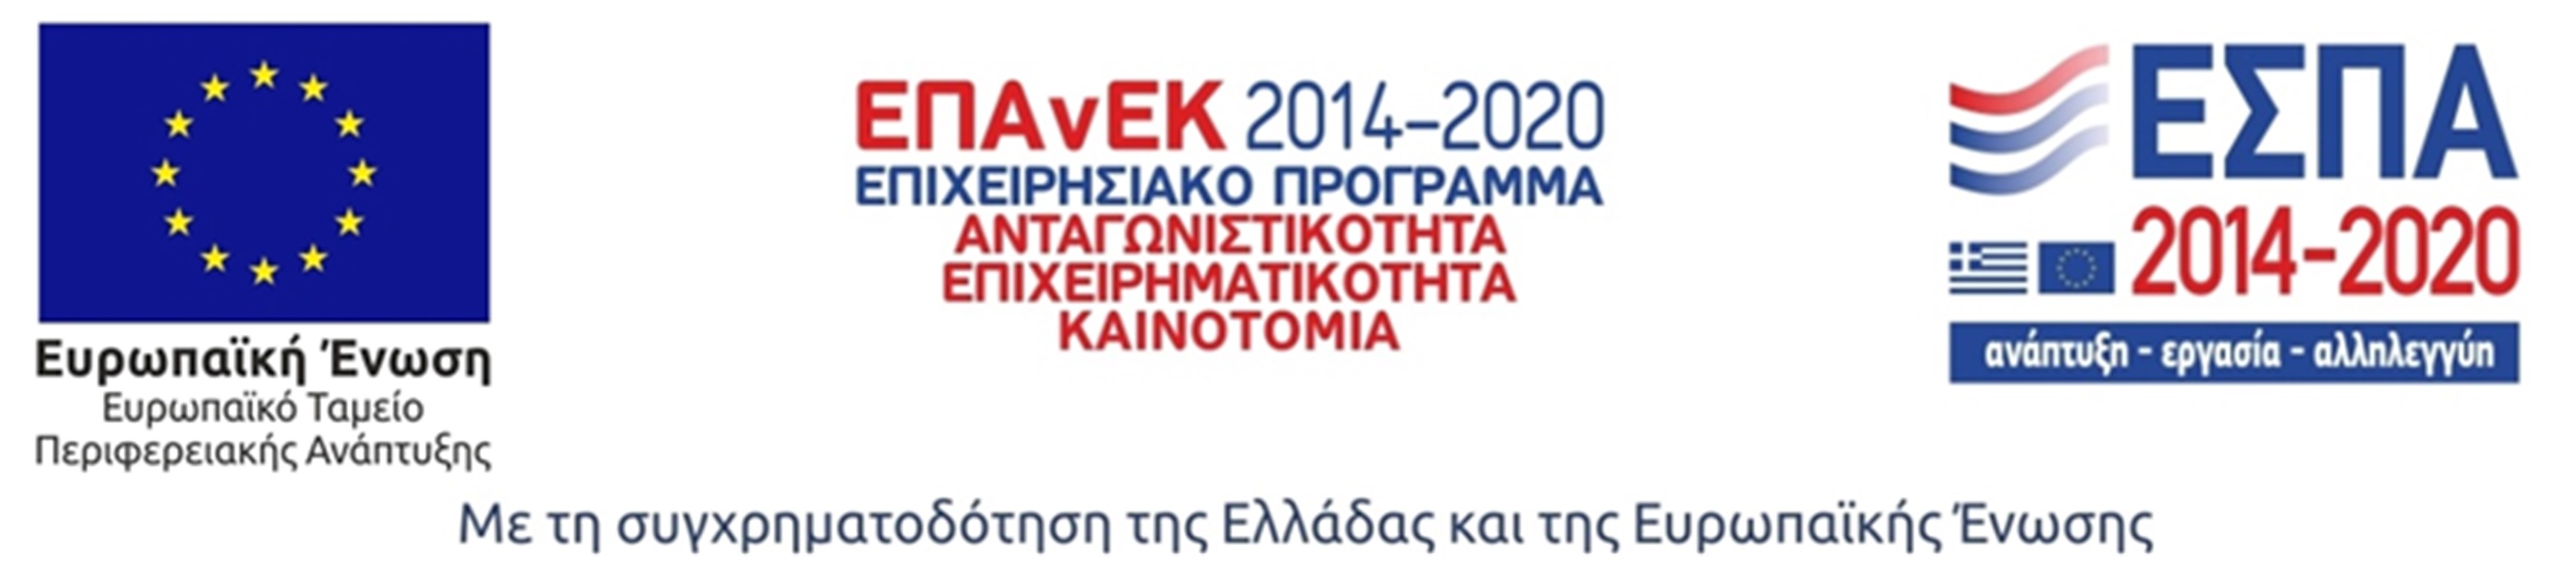 Συγχρηματοδότηση της Ελλάδας και της Ευρωπαϊκής Ένωσης